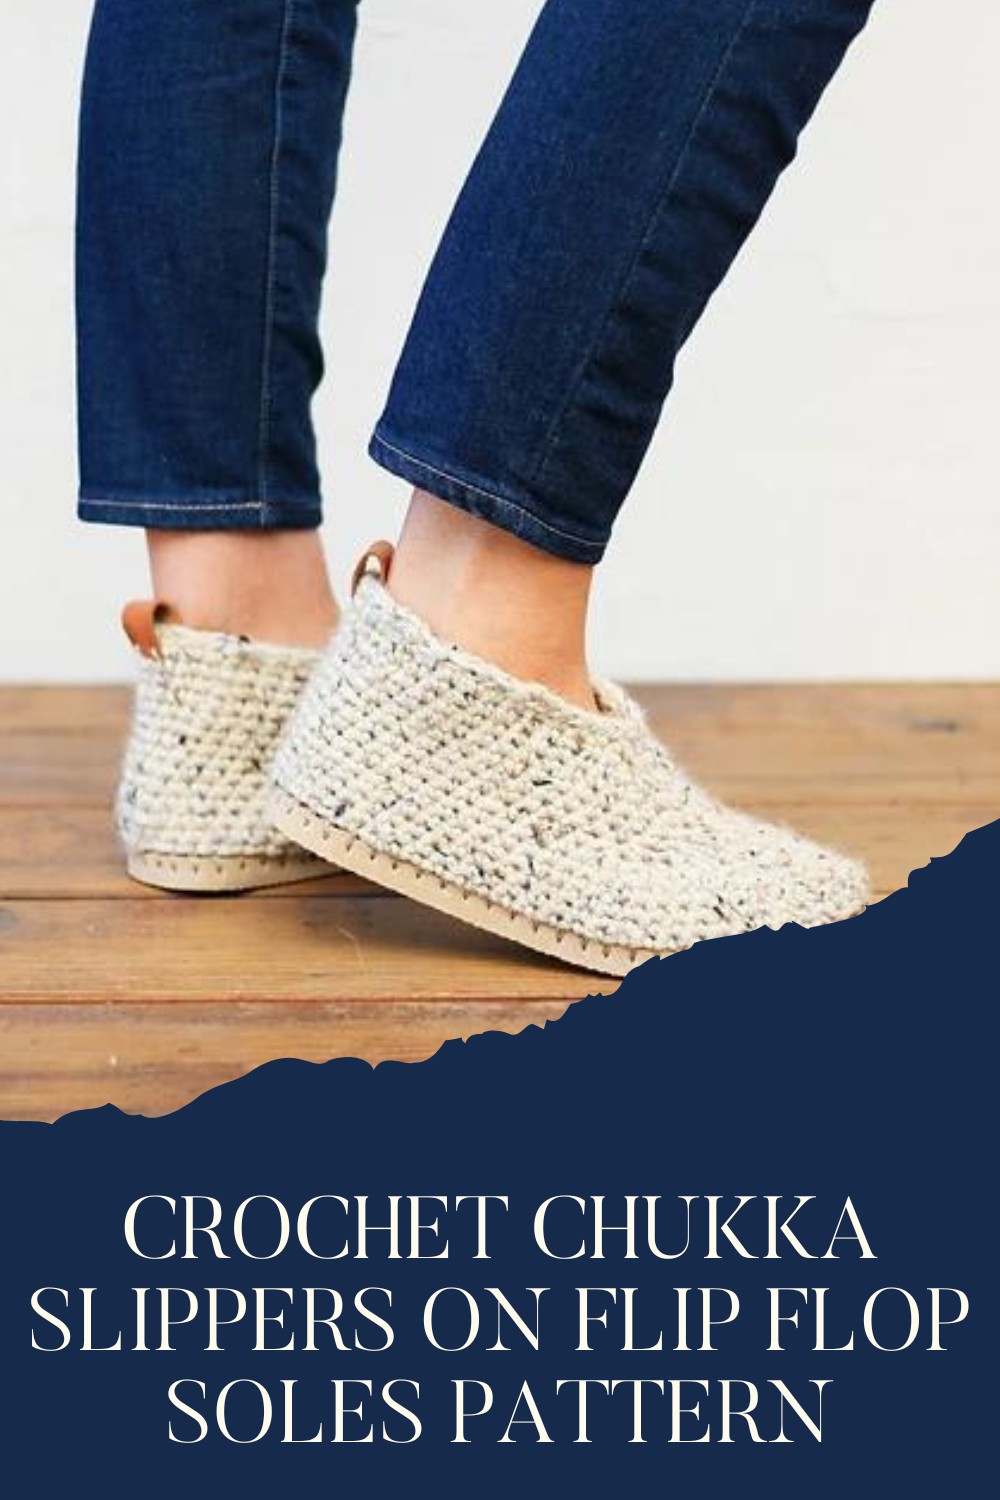 Crochet Chukka Slippers On Flip Flop Soles Pattern